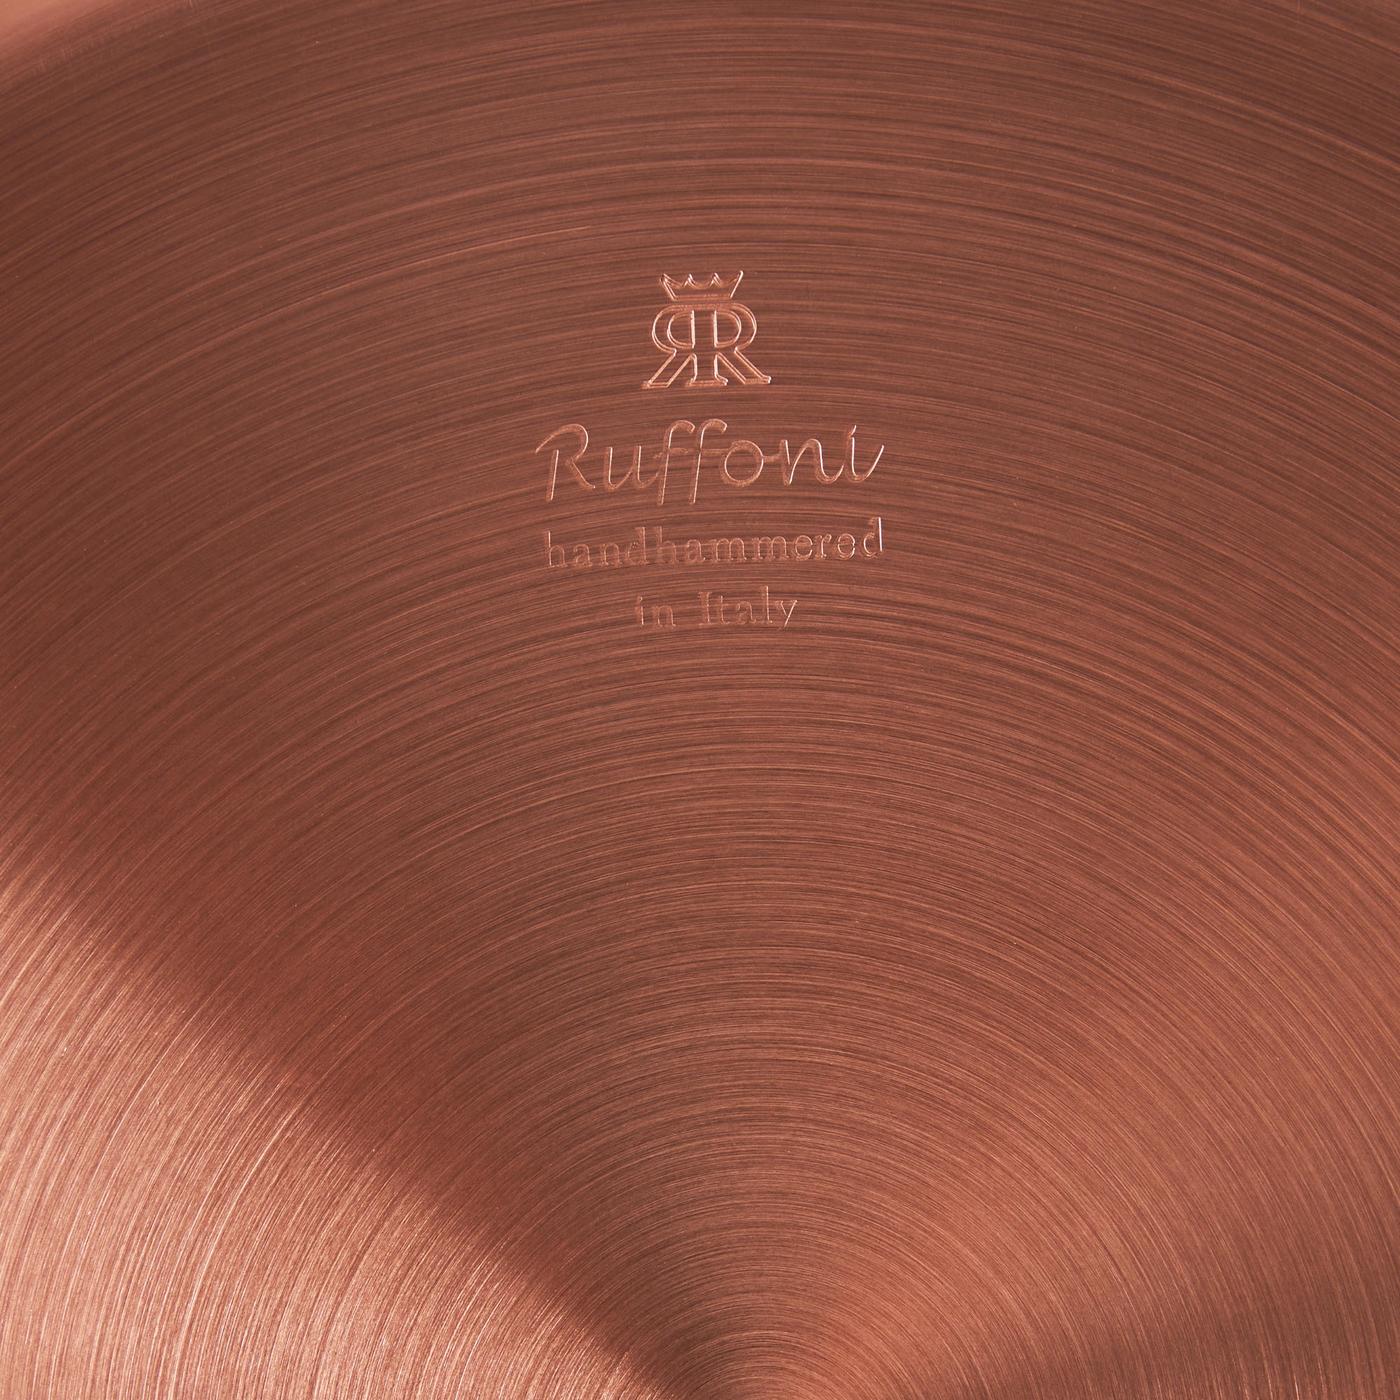 Ruffoni Symphonia Cupra 1.5 qt. Covered Copper Casserole